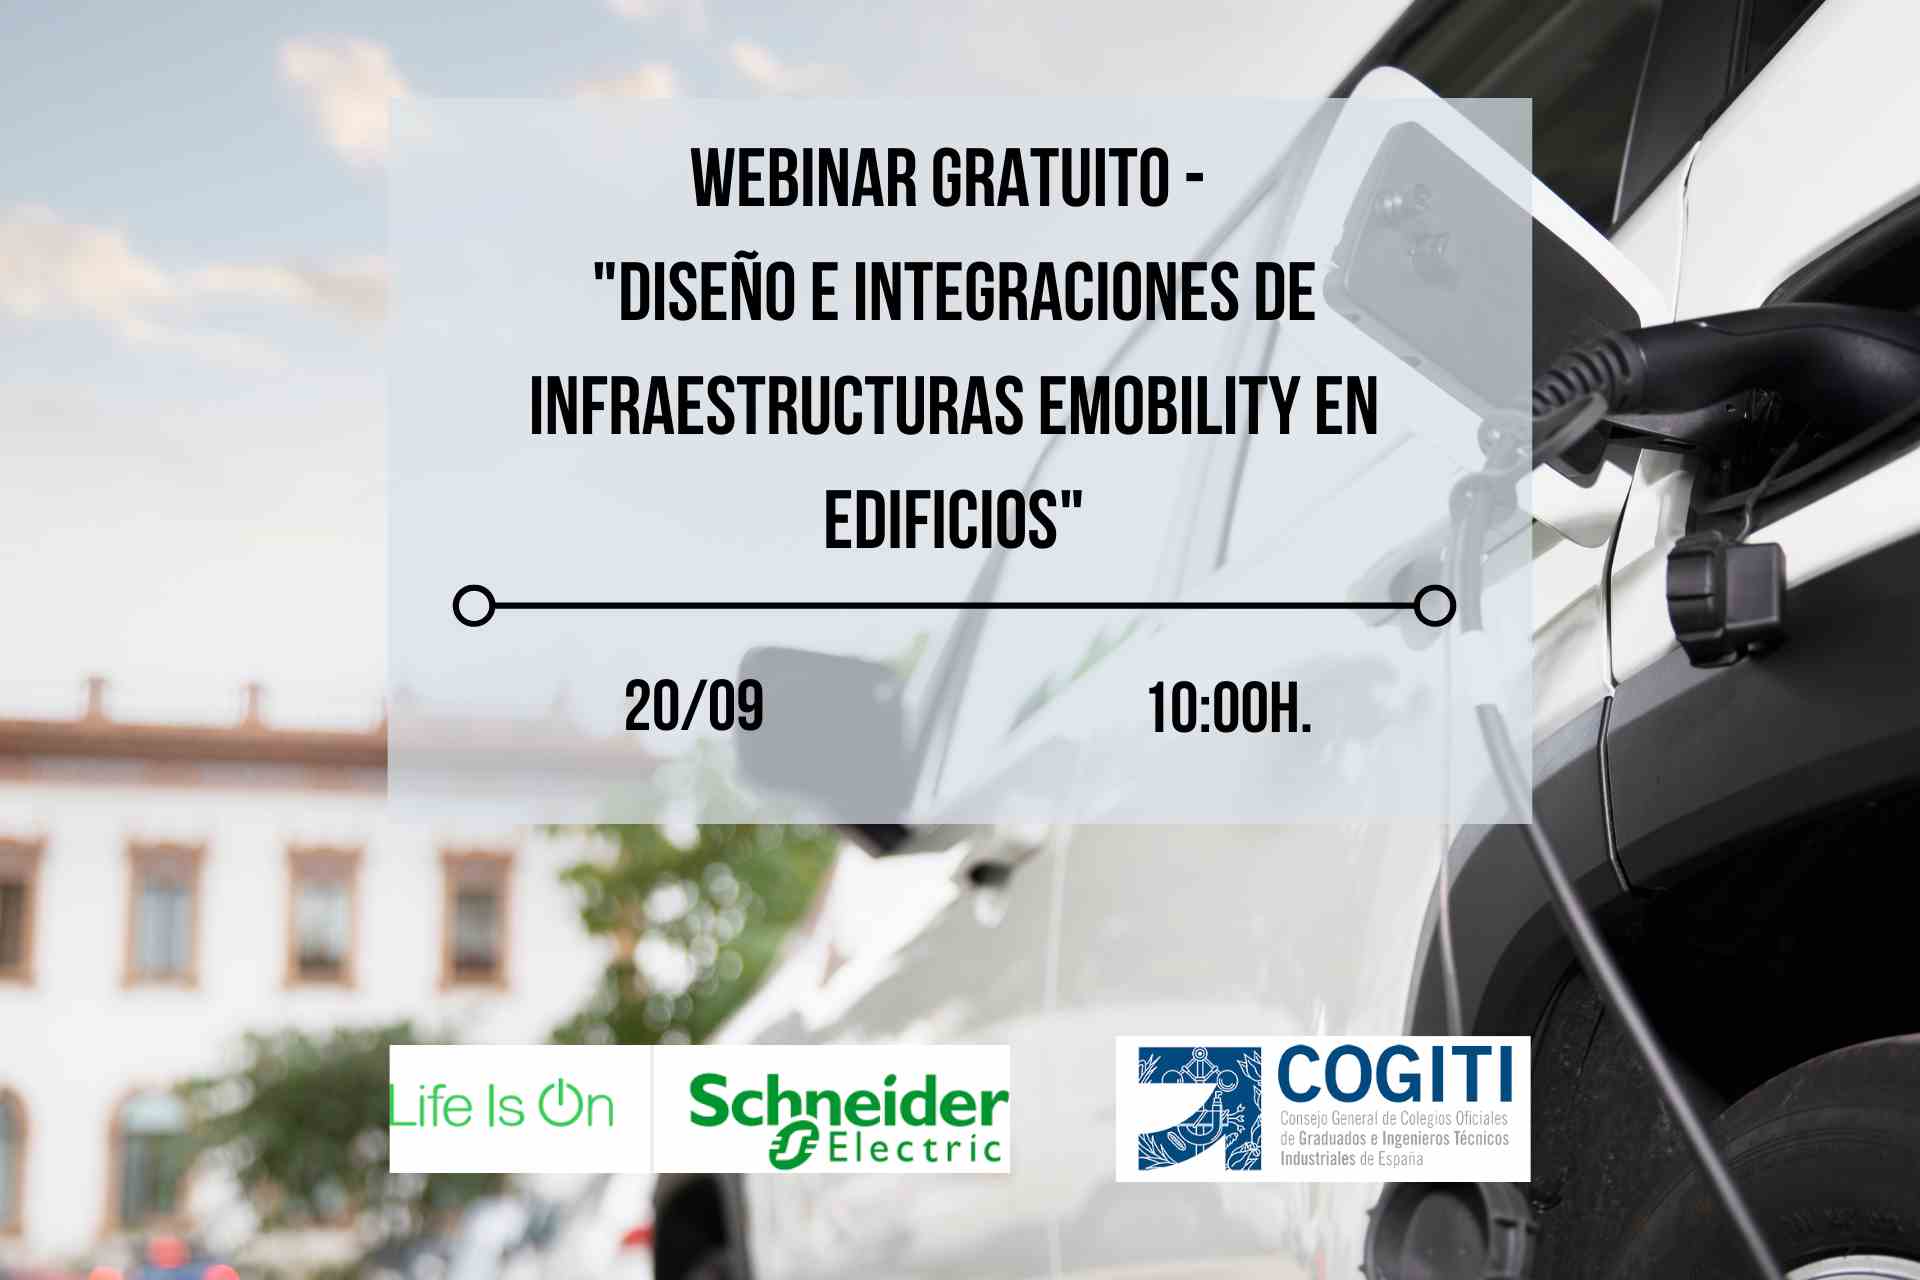 Imagen del evento Webinar COGITI "Diseño e Integraciones de Infraestructuras eMobility en Edificios"